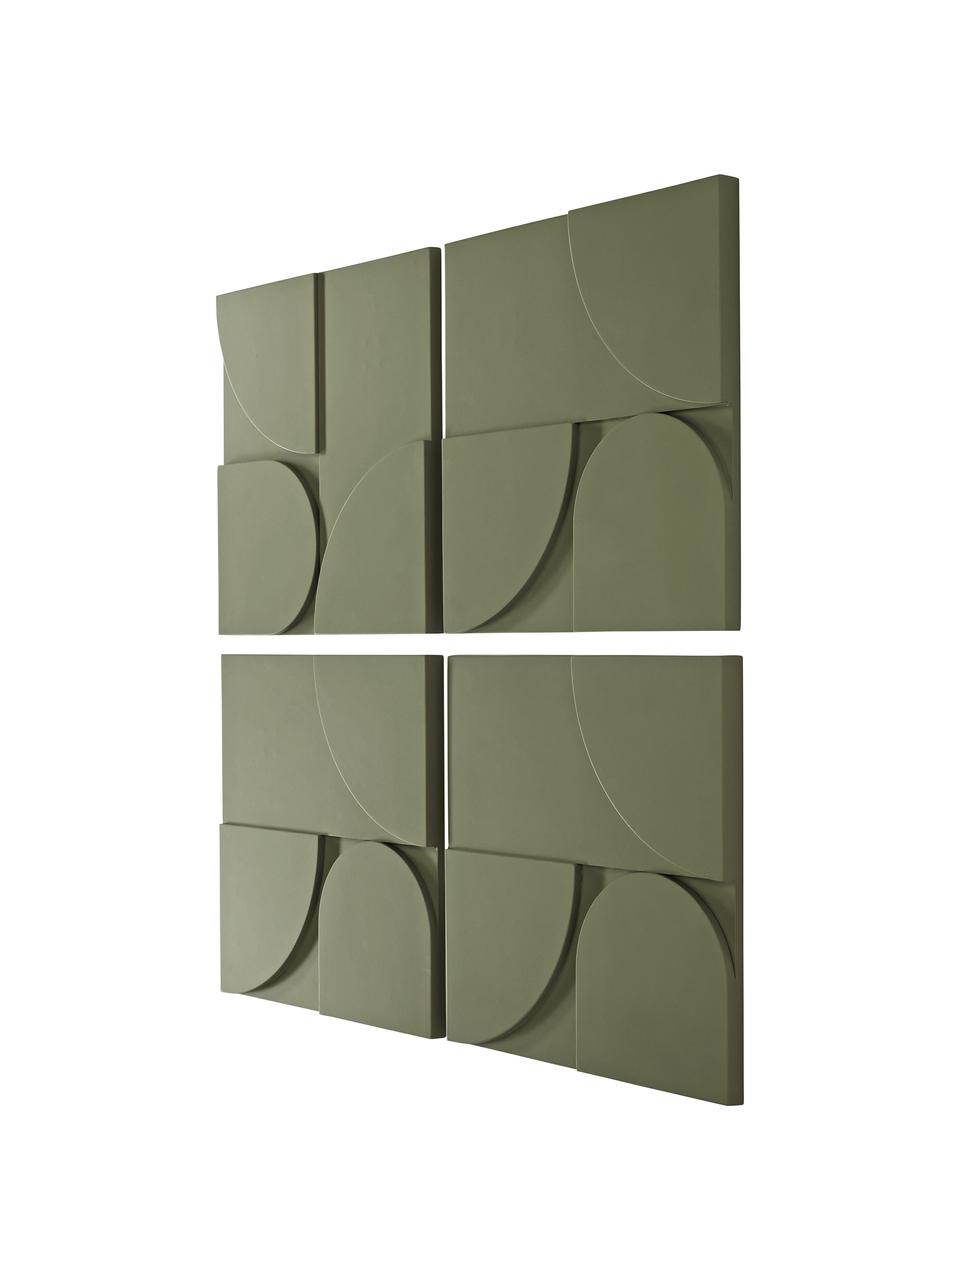 Súprava nástenných dekorácii z dreva Massimo, 4 diely, Drevovláknitá doska strednej hustoty (MDF), Zelená, Š 80 x V 80 cm